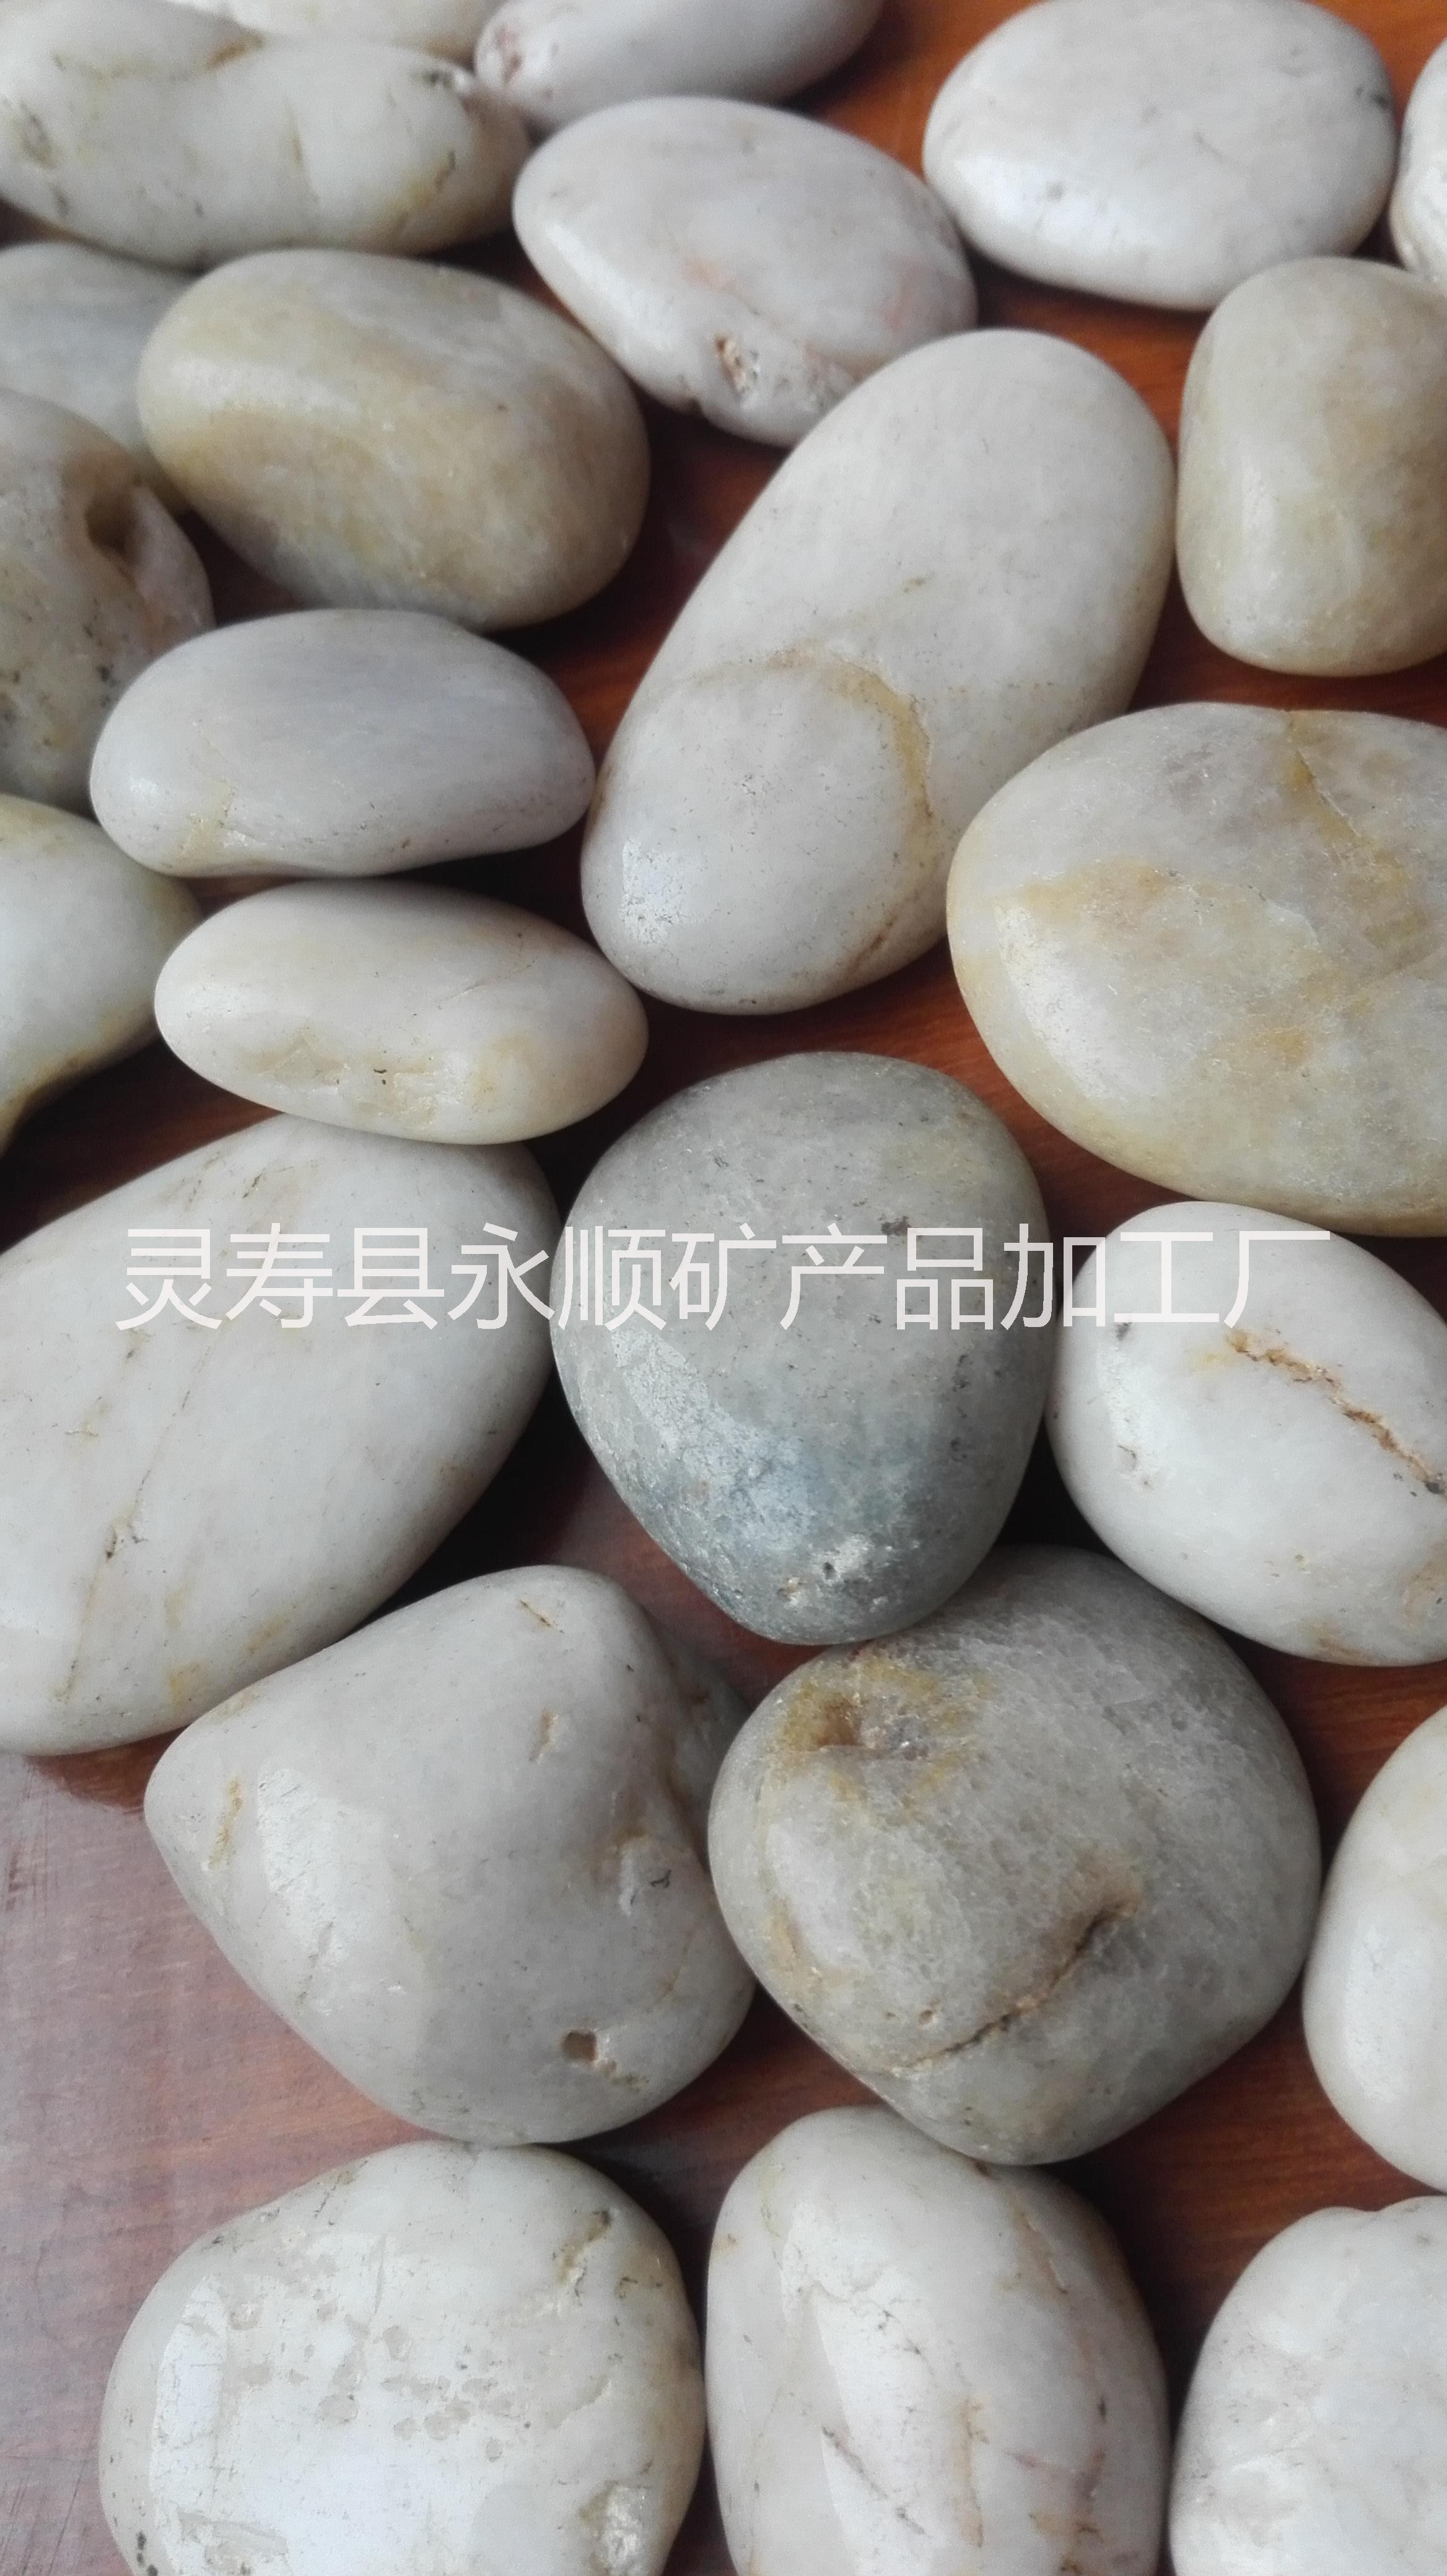 白色鹅卵石价格 白色鹅卵石一吨多少钱 3-5厘米白色鹅卵石一吨多少钱